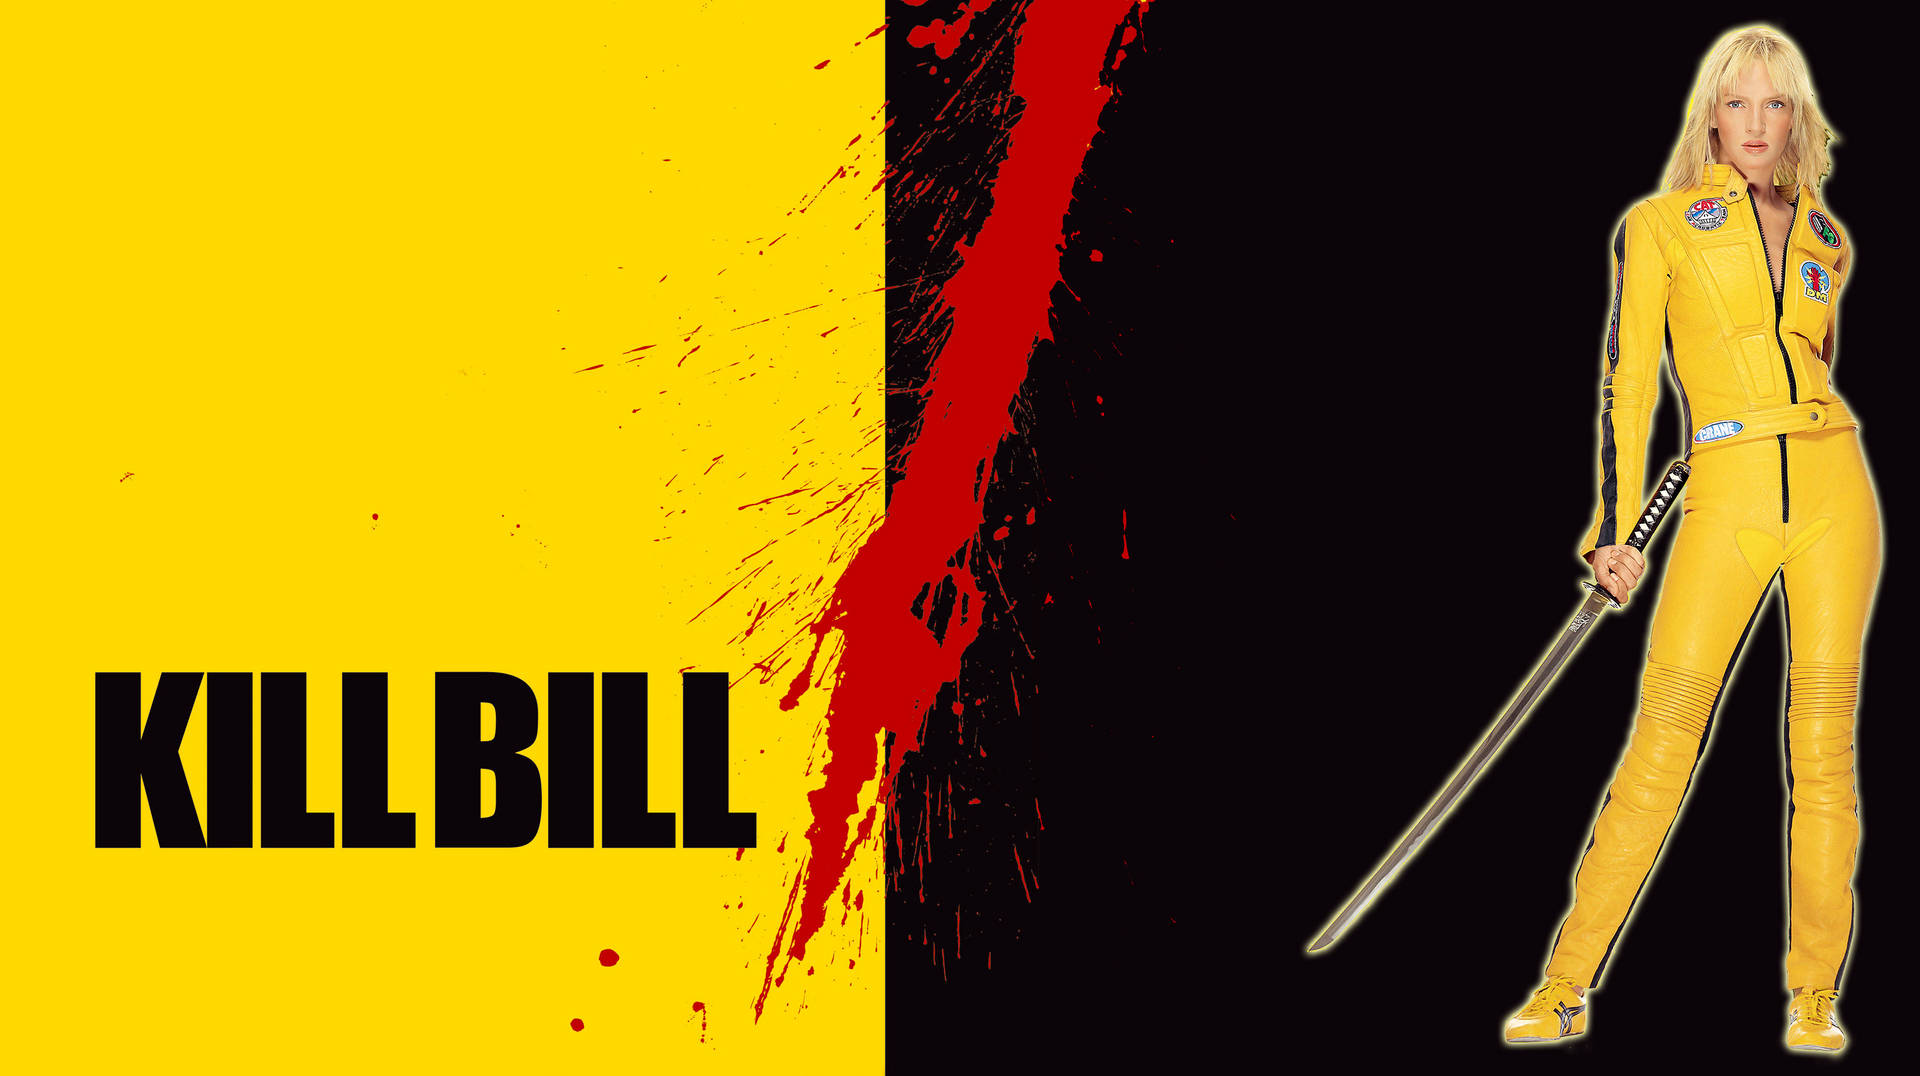 Plano De Fundo De Kill Bill